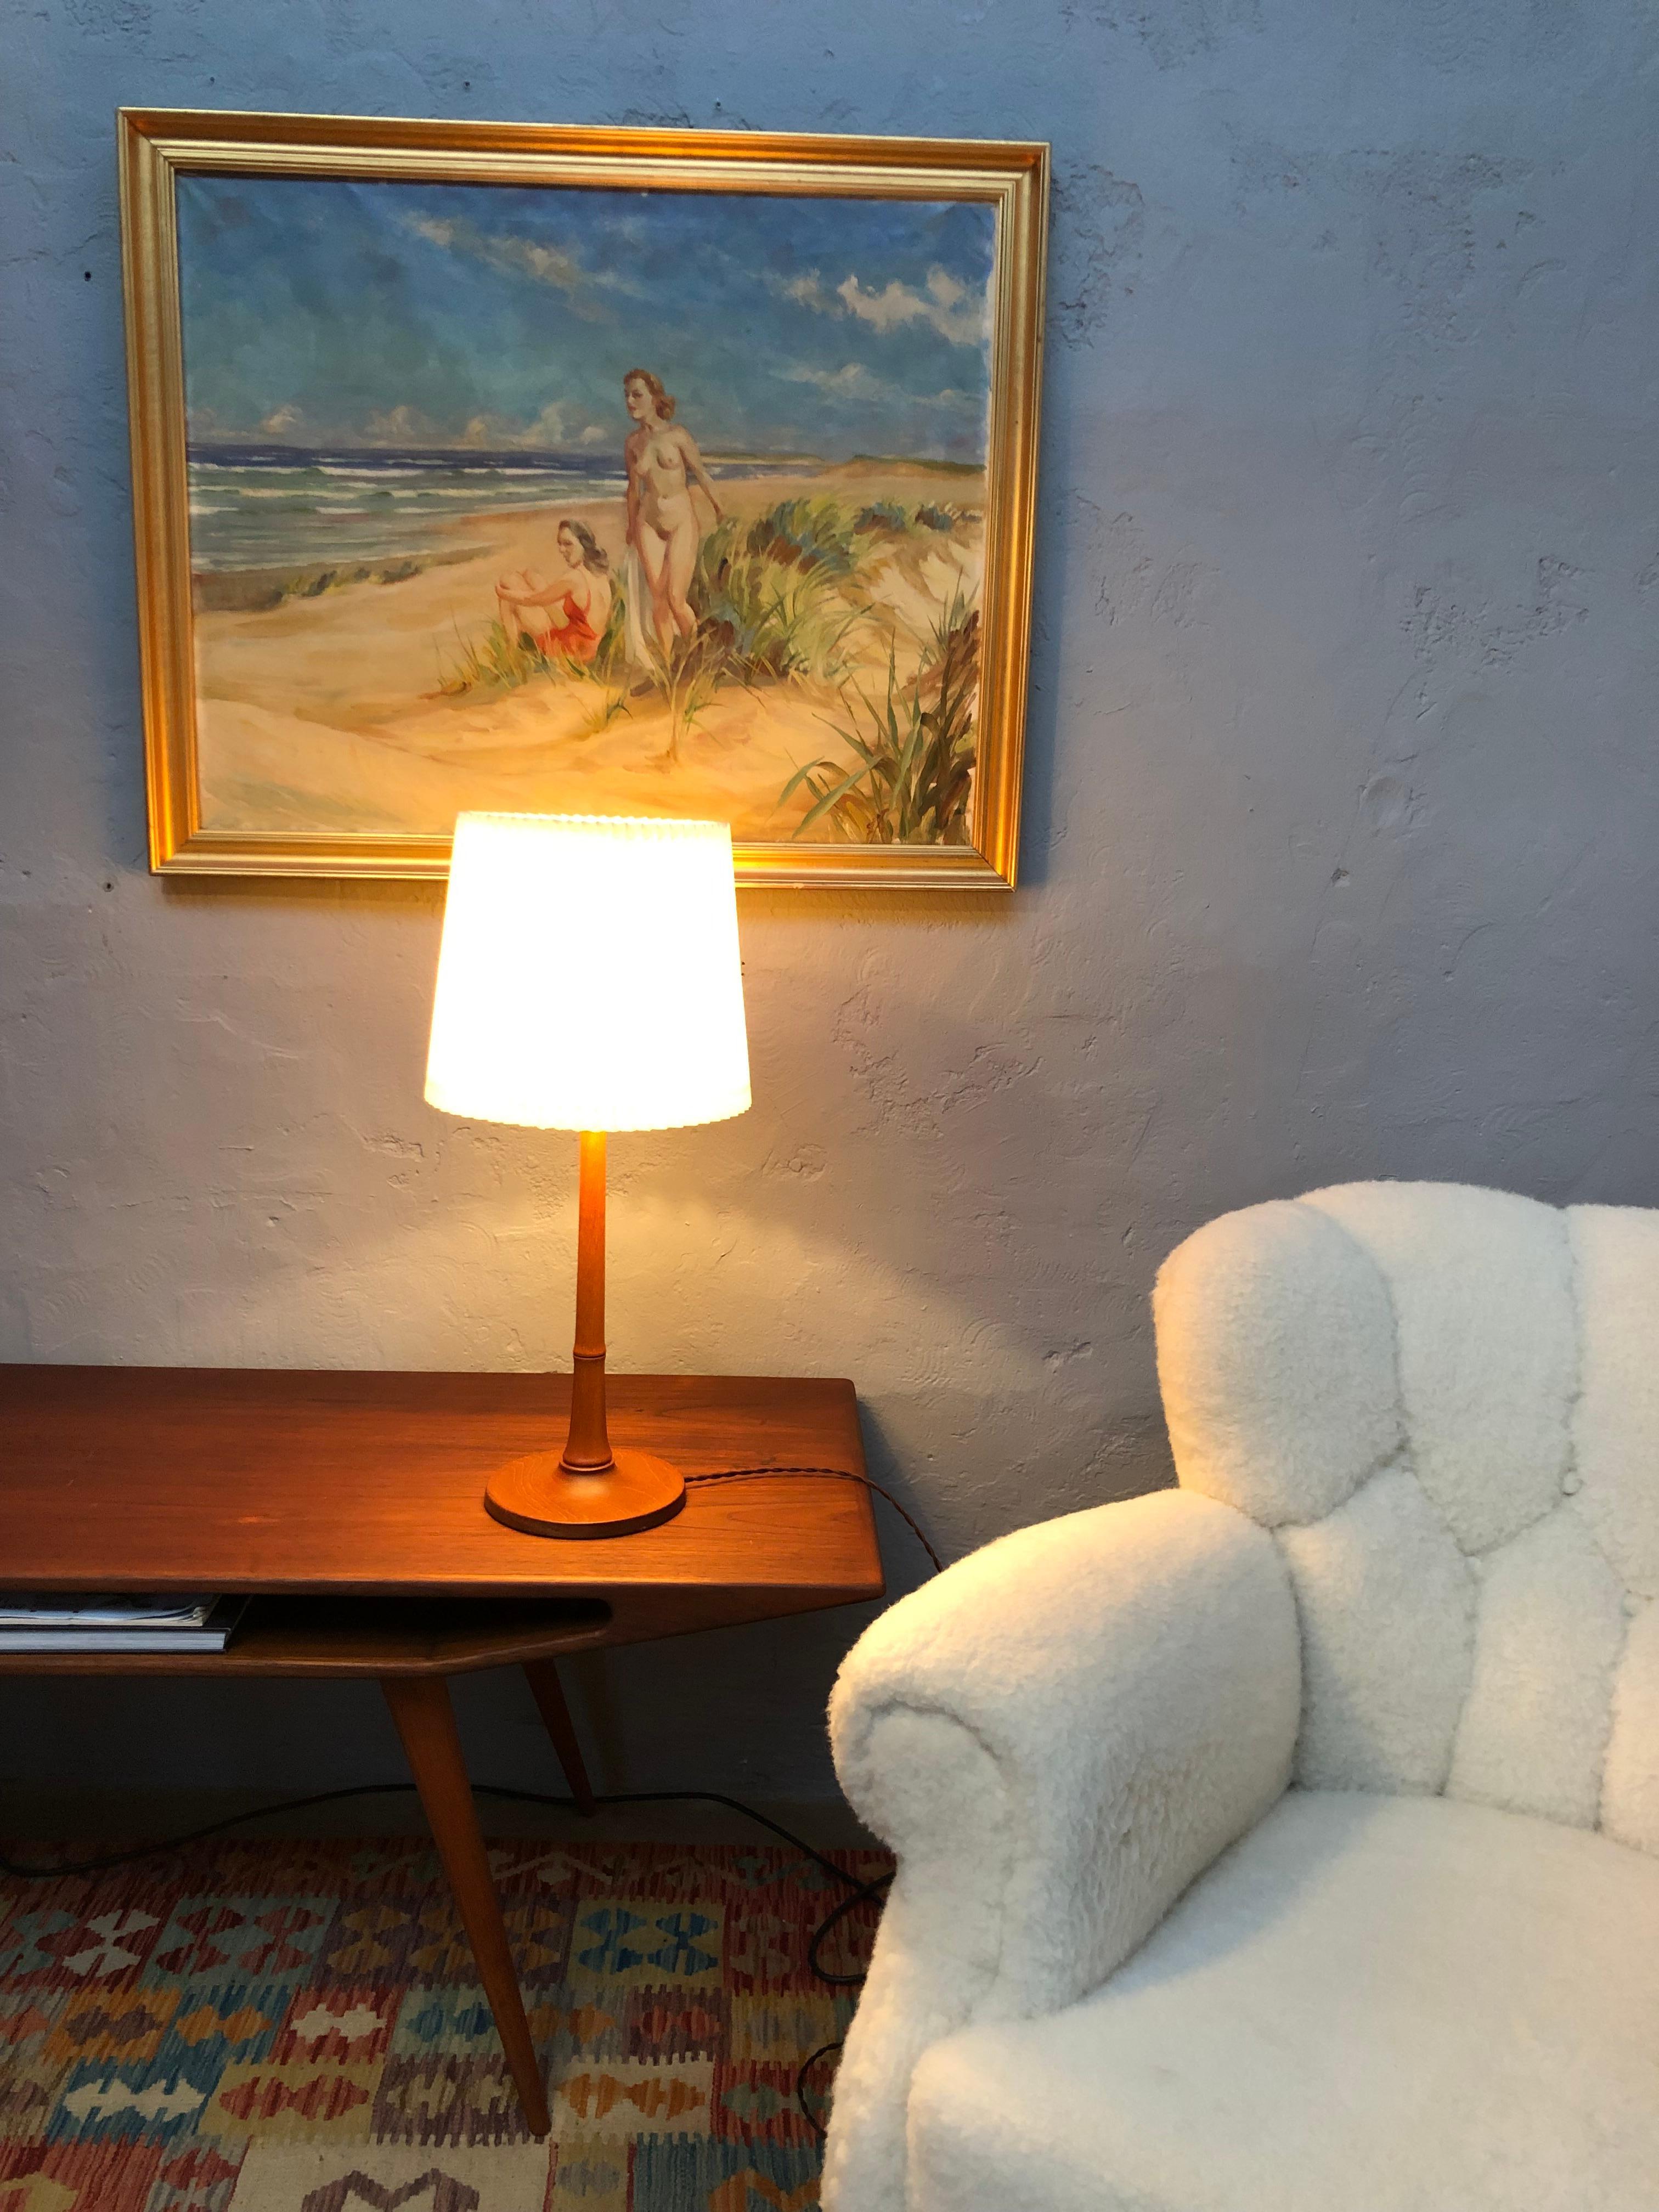 Lampe de table vintage en teck massif conçue par Esben Klint pour Le Klint dans les années 1940. 
En bois de chêne tourné et en très bon état vintage avec toutes les pièces d'origine. 
Recâblé avec du tissu marron et peut être équipé d'une prise UE,